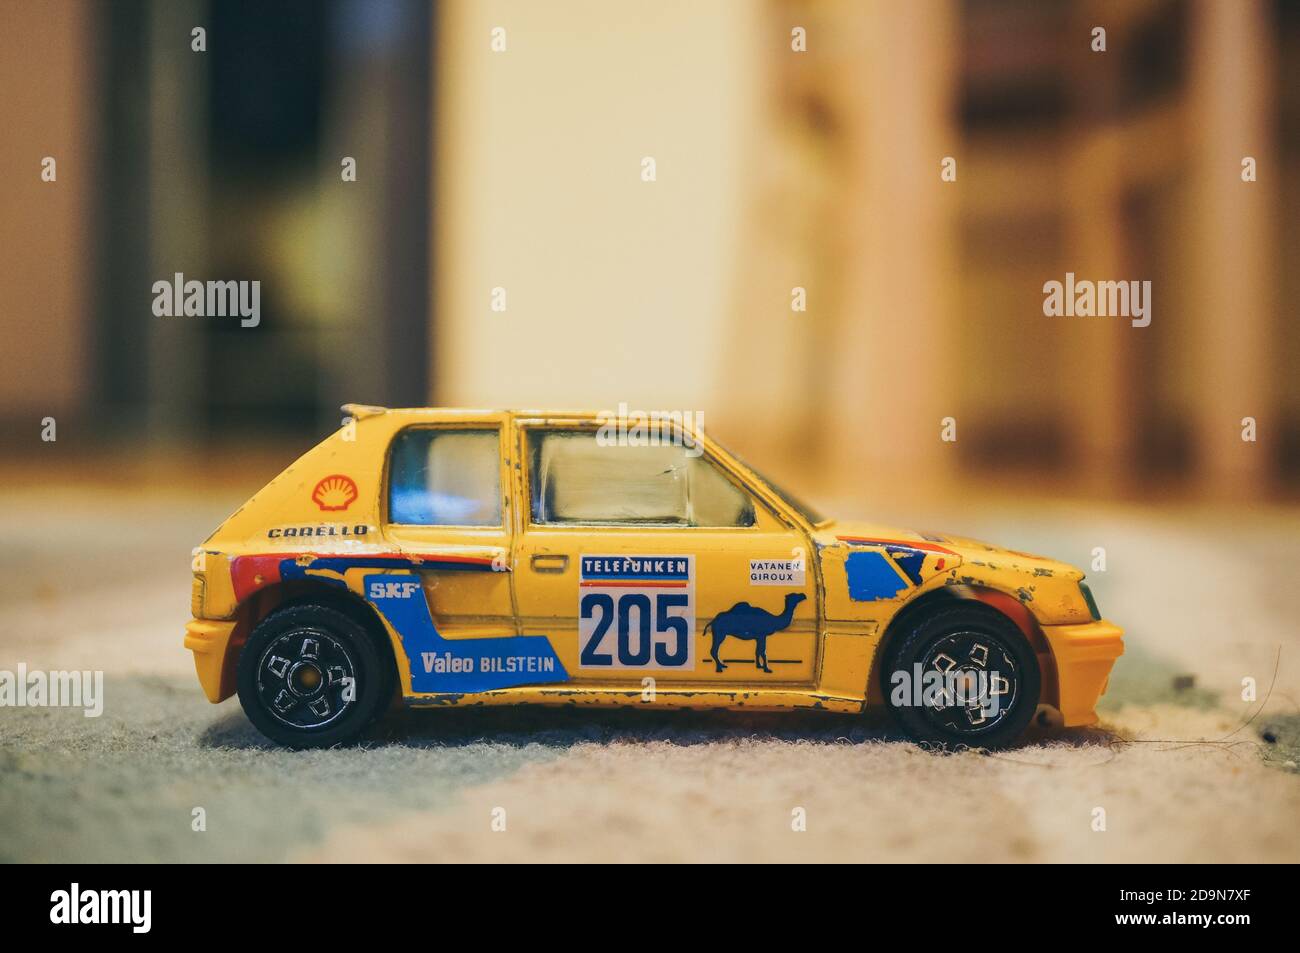 POZNAN, POLONIA - 13 de noviembre de 2016: Bburago modelo de juguete Peugeot  205 coche deportivo en una alfombra floo Fotografía de stock - Alamy